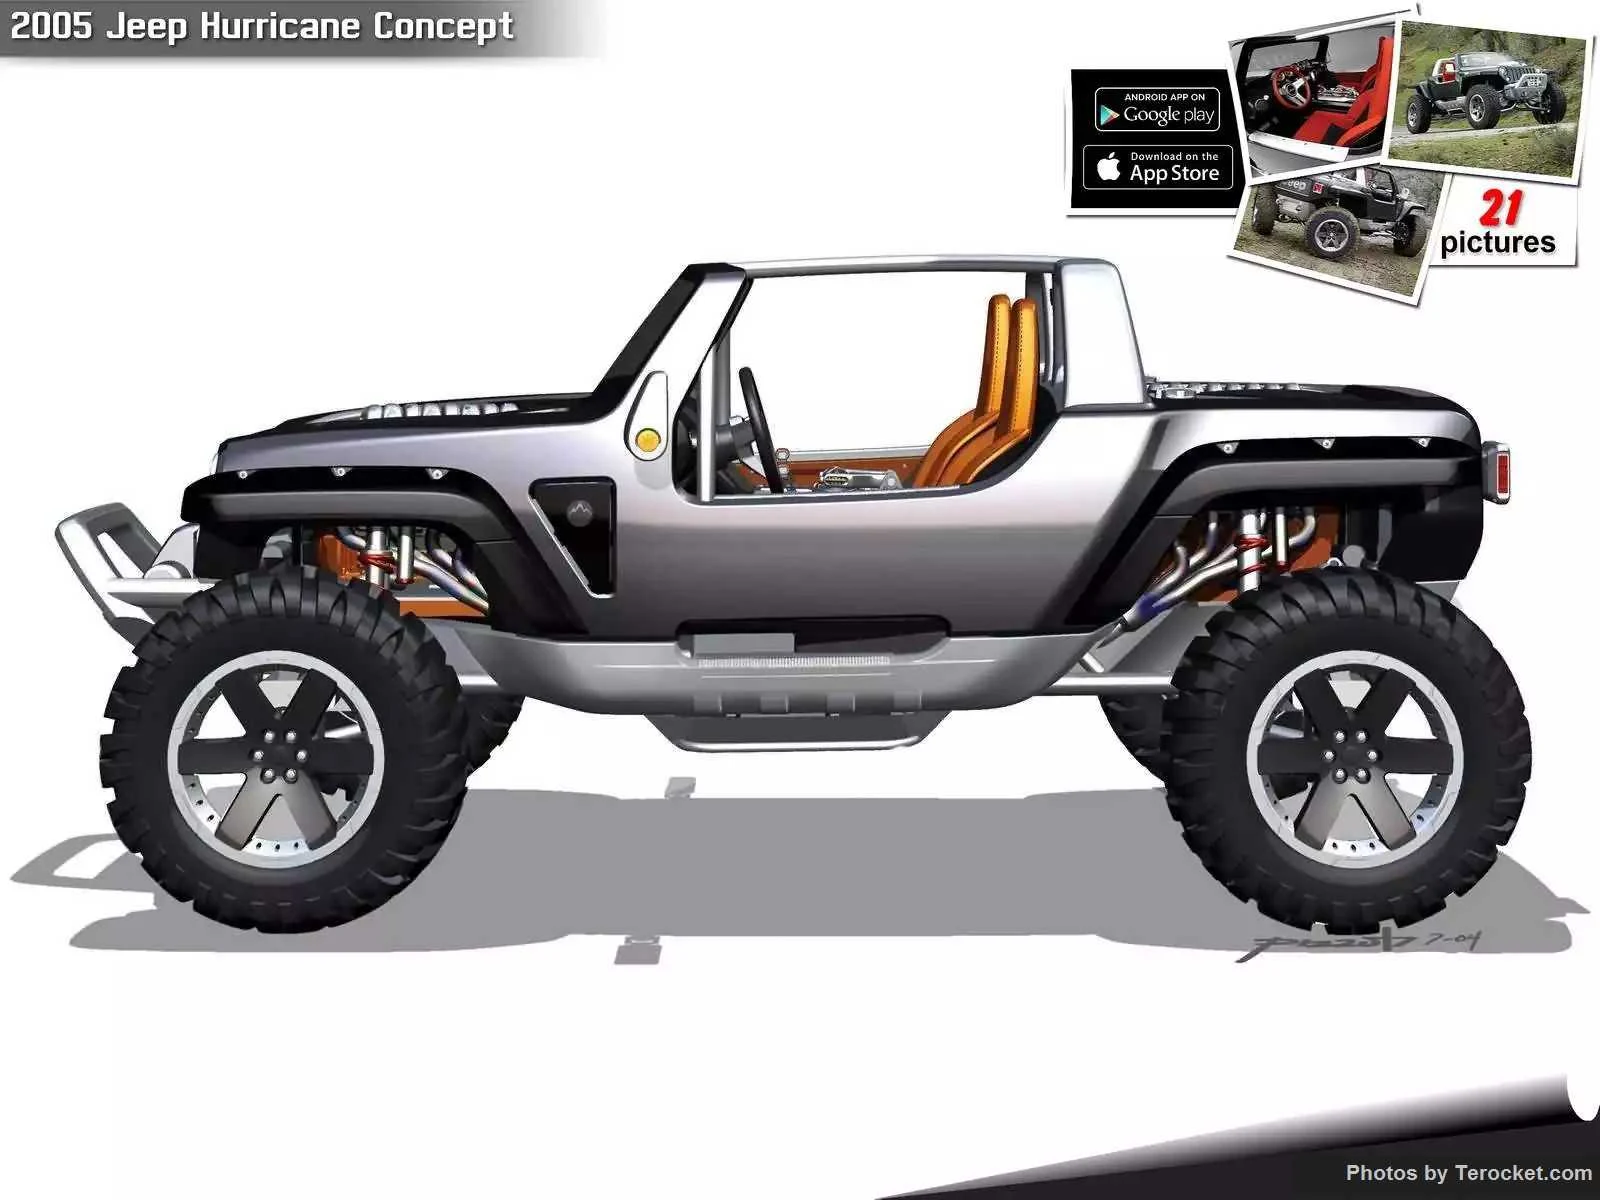 Hình ảnh xe ô tô Jeep Hurricane Concept 2005 & nội ngoại thất